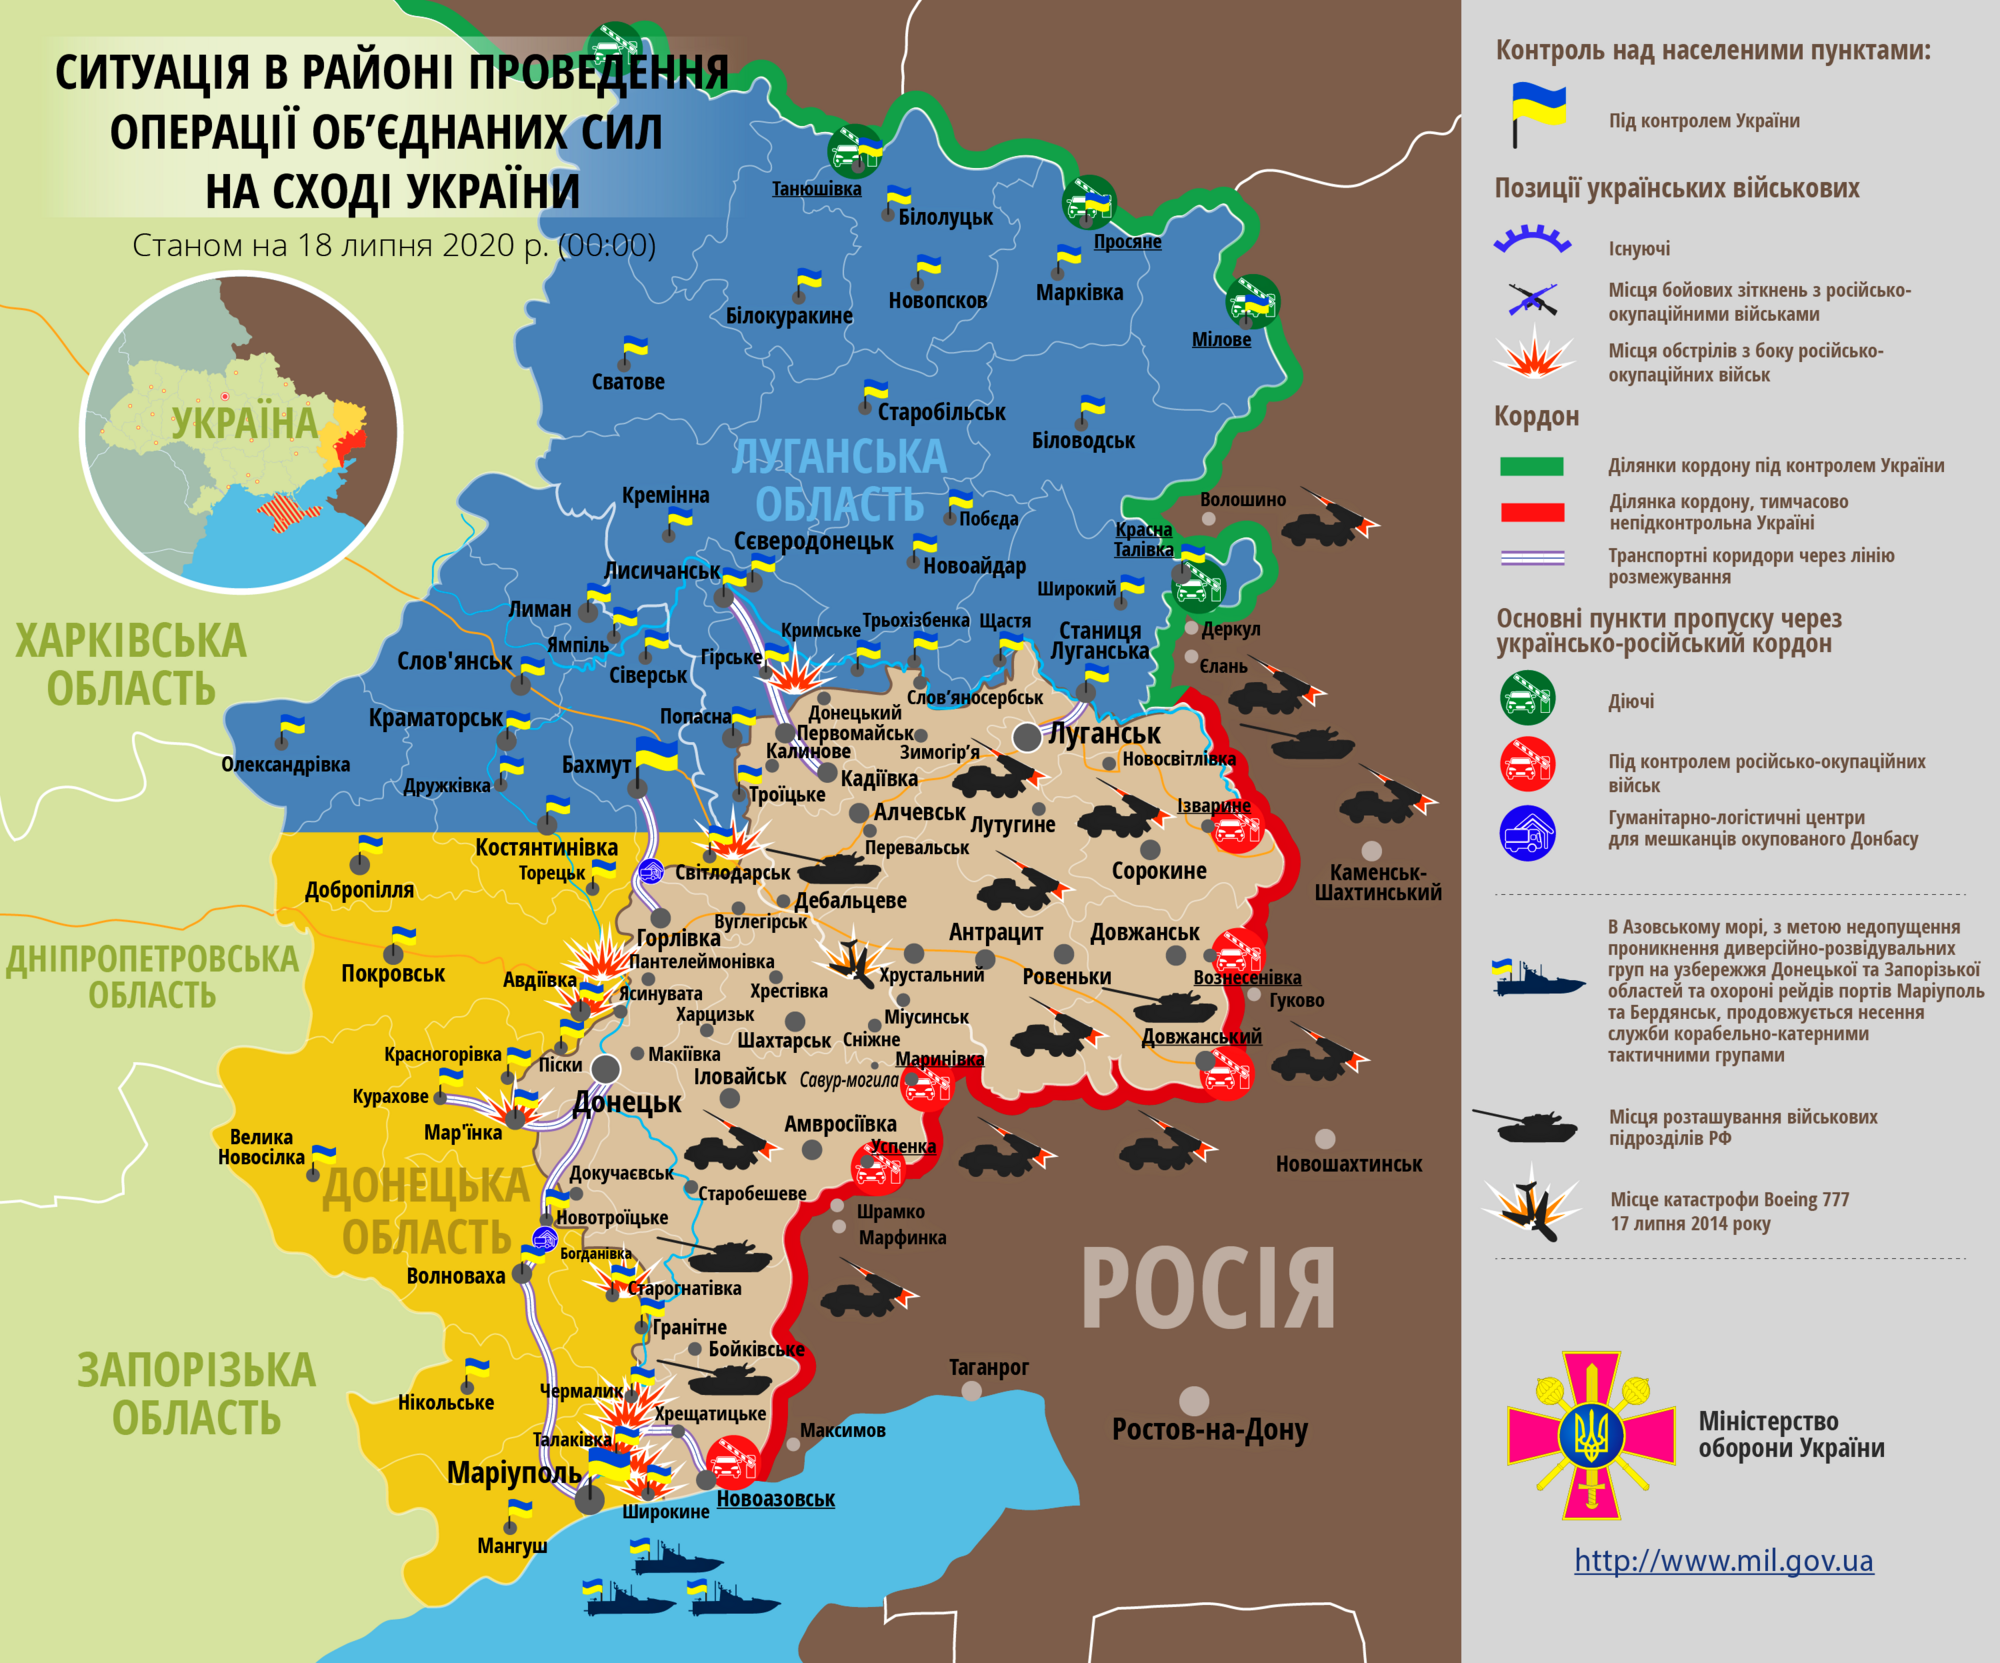 Ситуация в зоне проведения ООС на Донбассе 18 июля